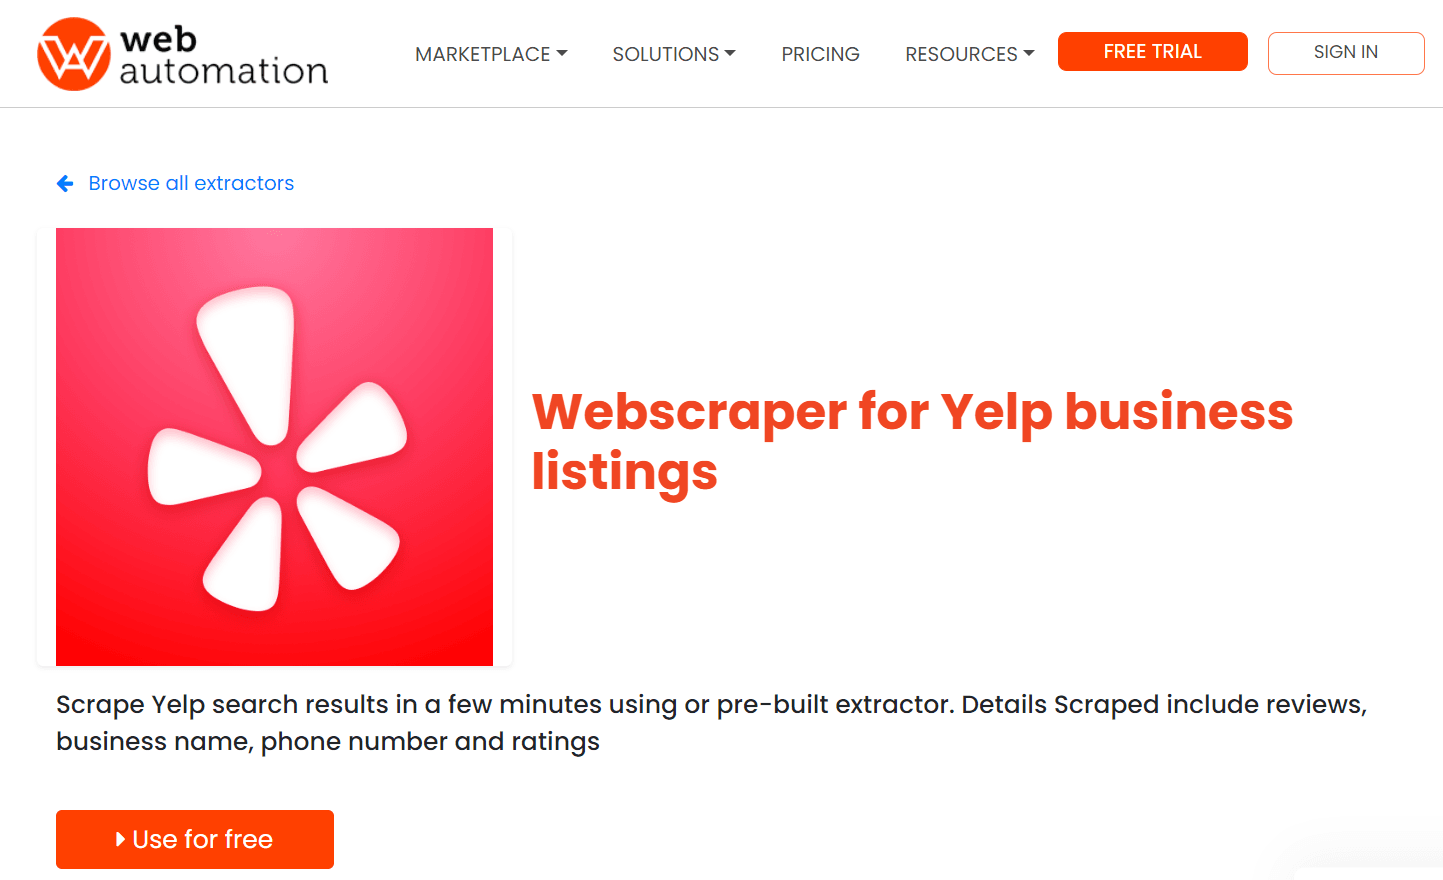 Webautomation.io Yelp scraper